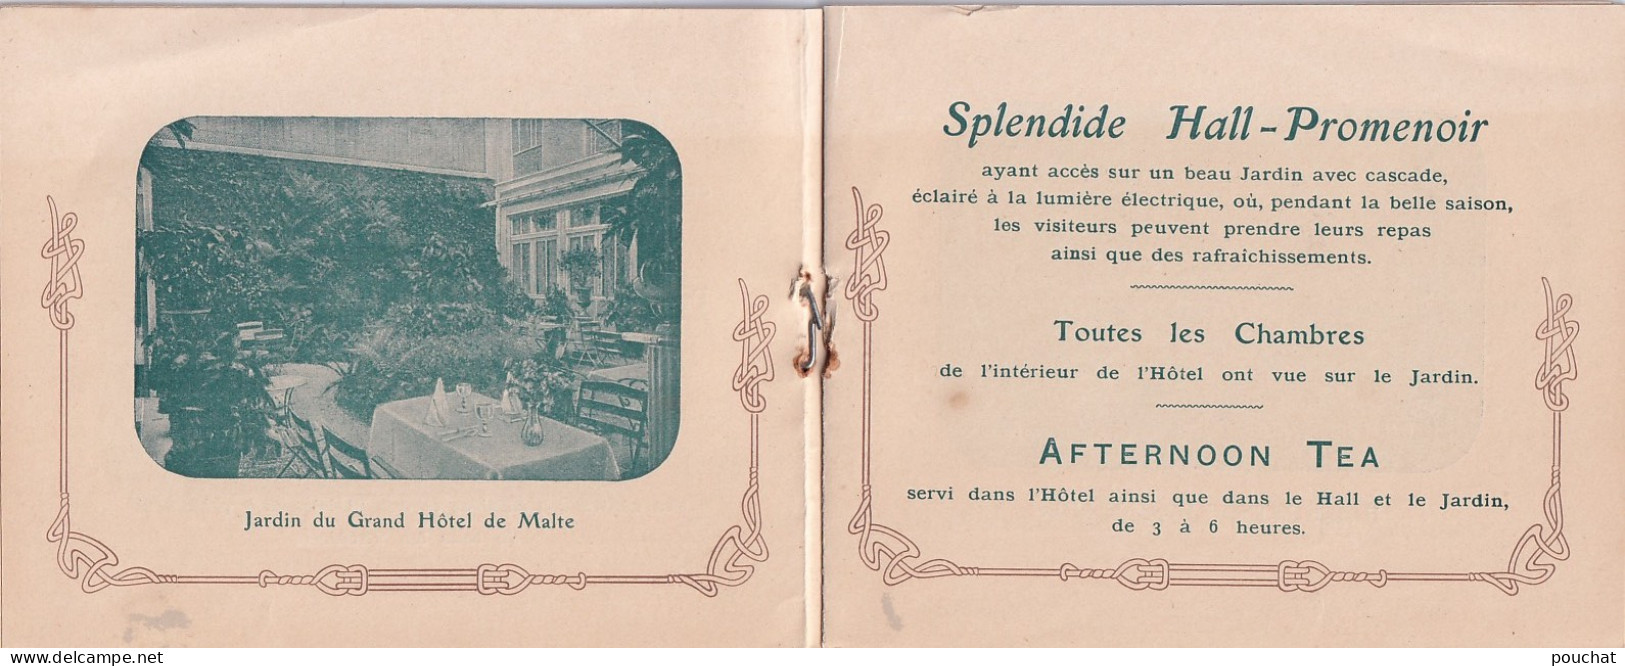  75) PARIS - GRAND  HOTEL DE MALTE - 63 RUE RICHELIEU - LIVRET PUBLICITAIRE + CARTE PHOTO DU PERSONNEL - TOUS LES SCANS